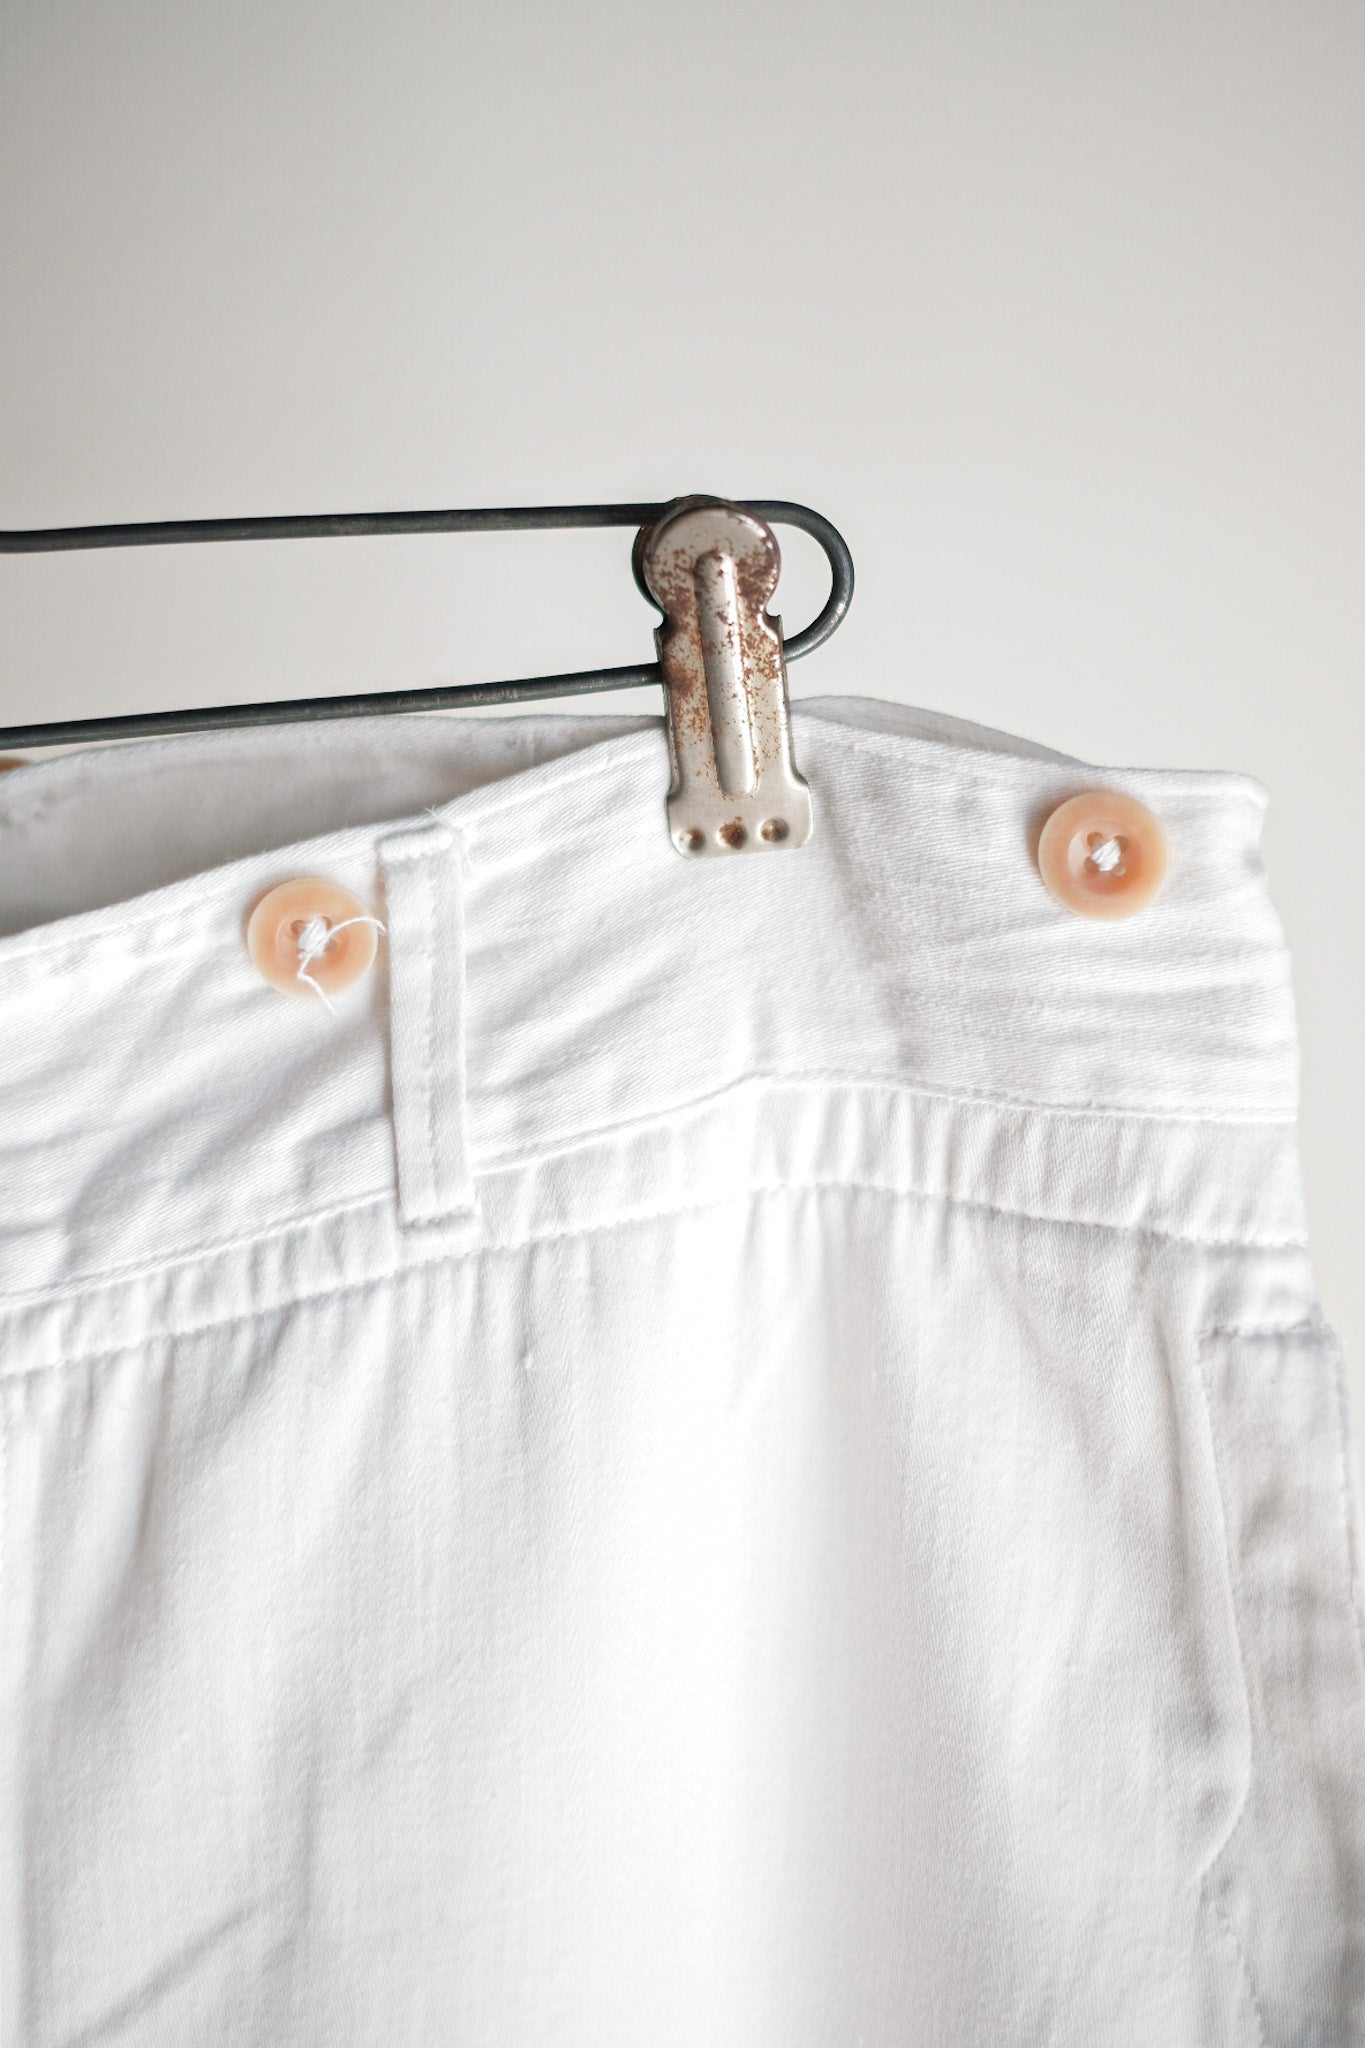 [〜30年代]德國復古棉質絲綢長褲